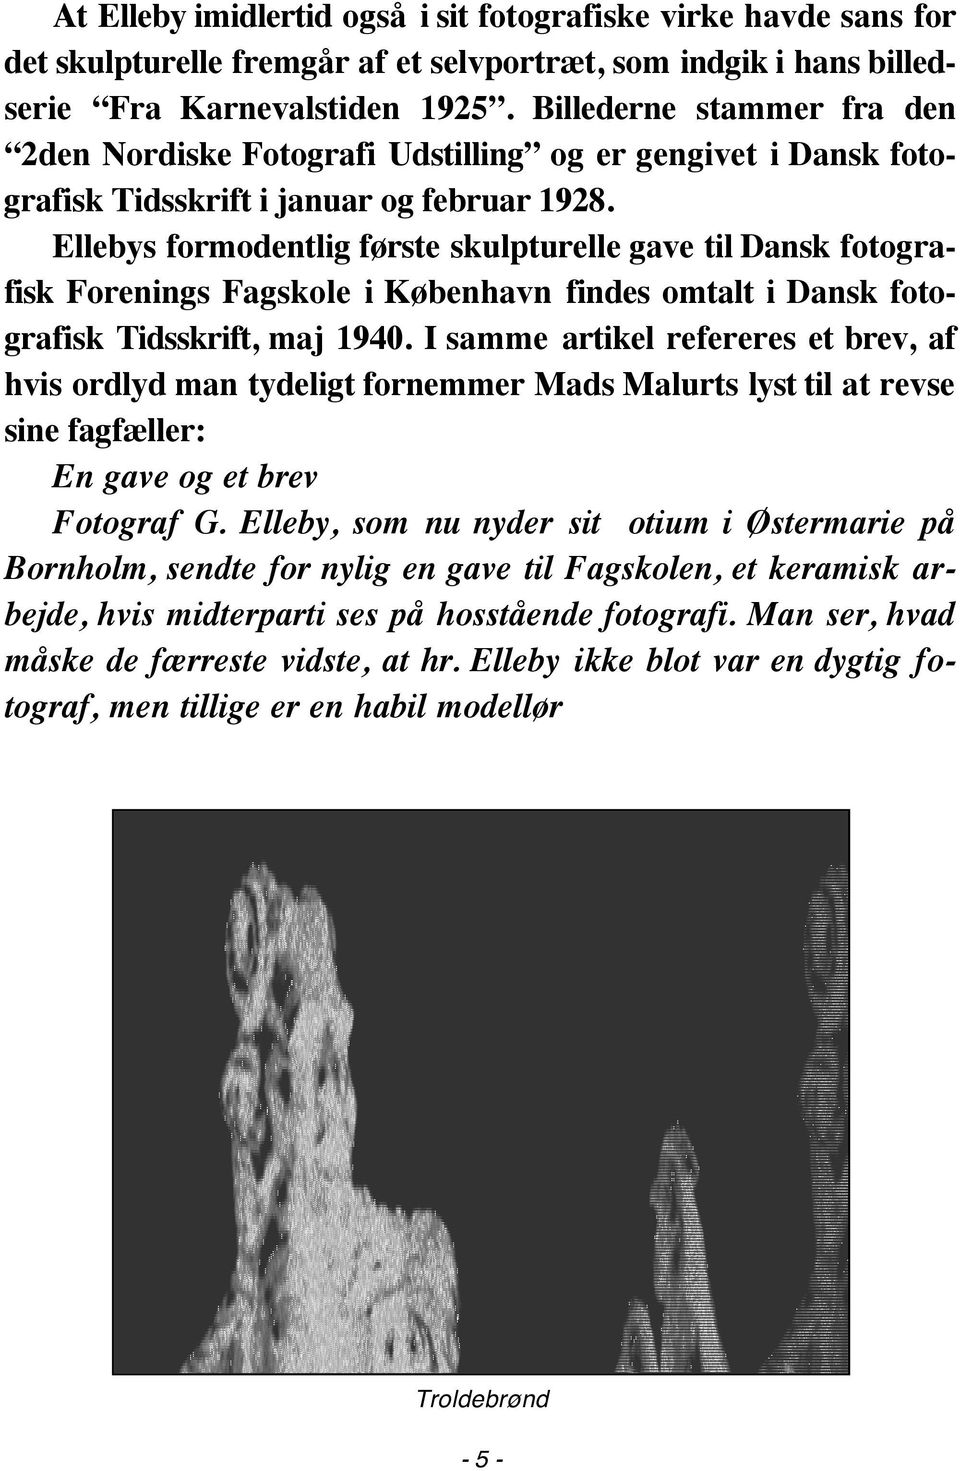 Ellebys formodentlig første skulpturelle gave til Dansk fotografisk Forenings Fagskole i København findes omtalt i Dansk fotografisk Tidsskrift, maj 1940.